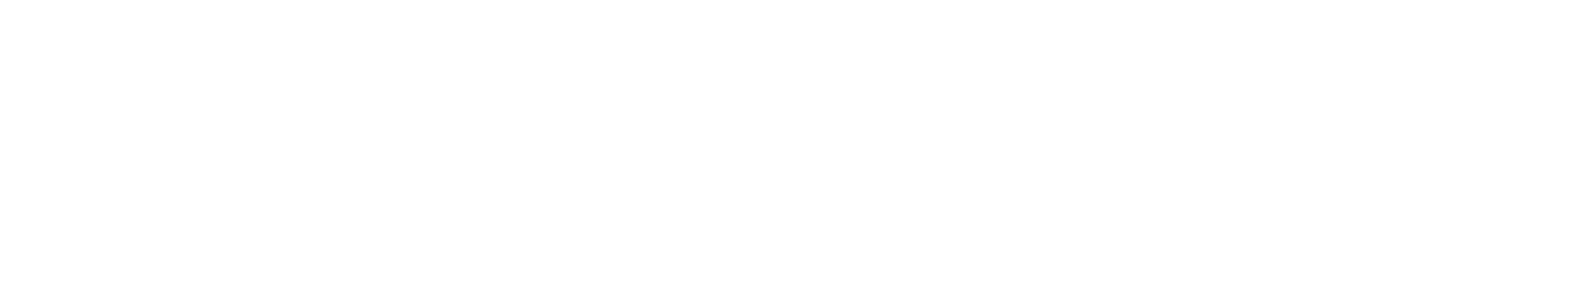 W&T Offshore logo grand pour les fonds sombres (PNG transparent)